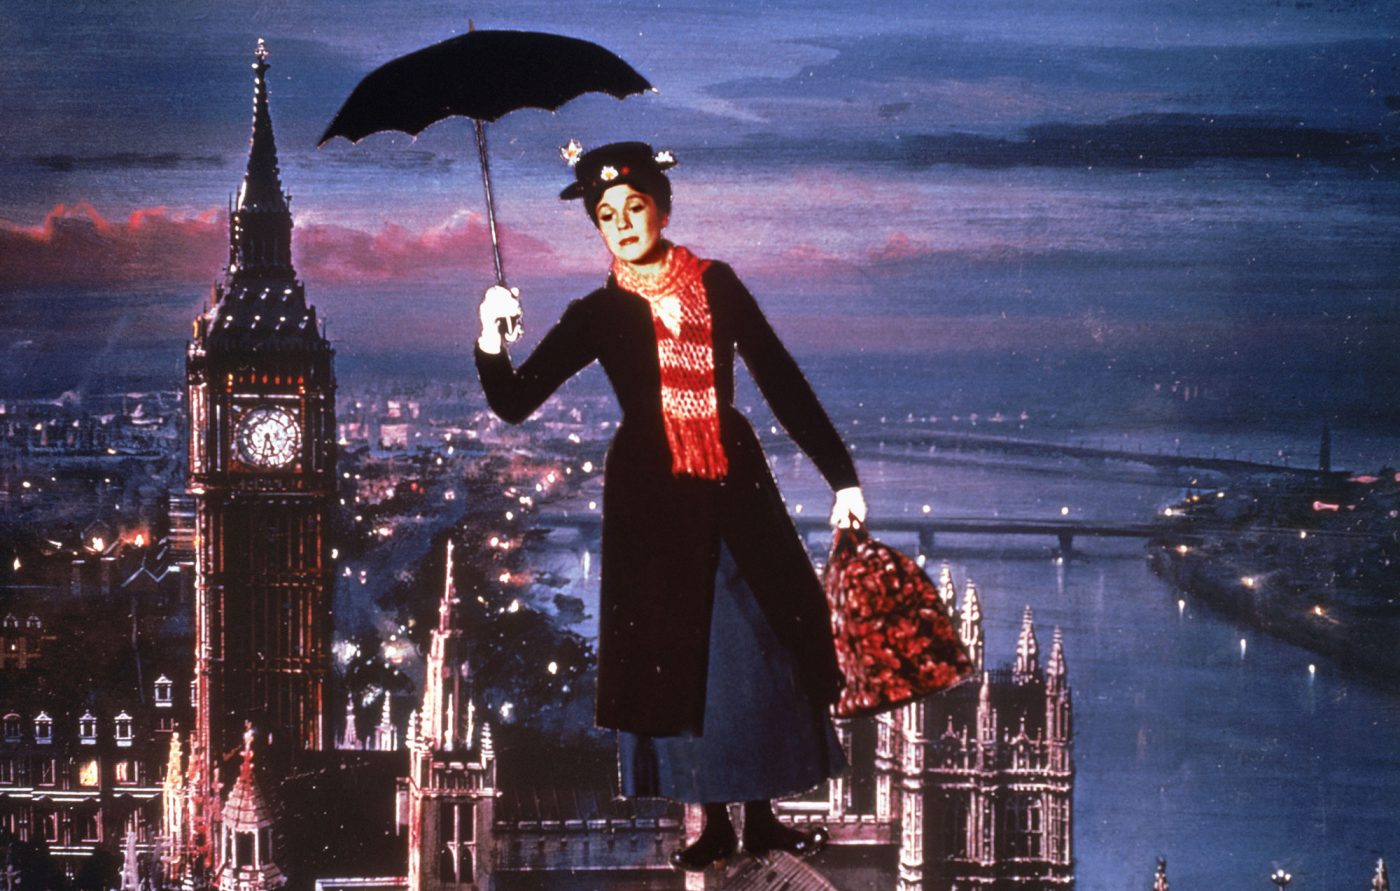 Stasera in TV, Mary Poppins su Rai1: 5 curiosità sul film